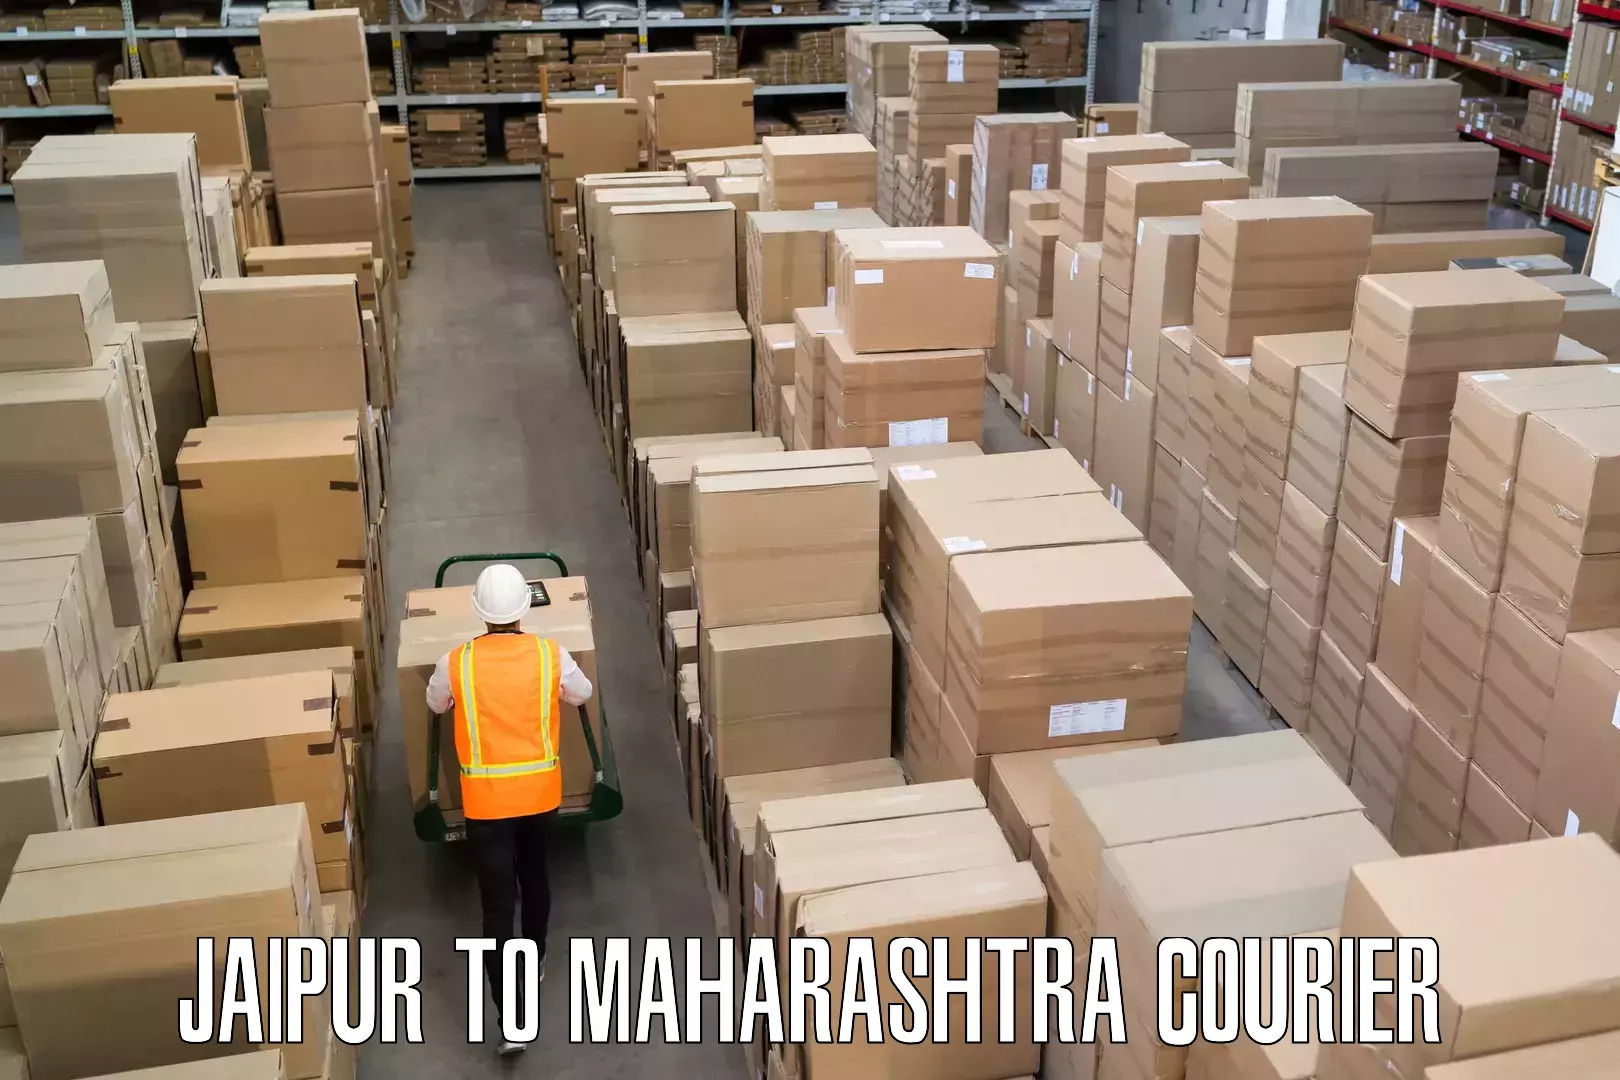 Luggage transport company Jaipur to Maharashtra